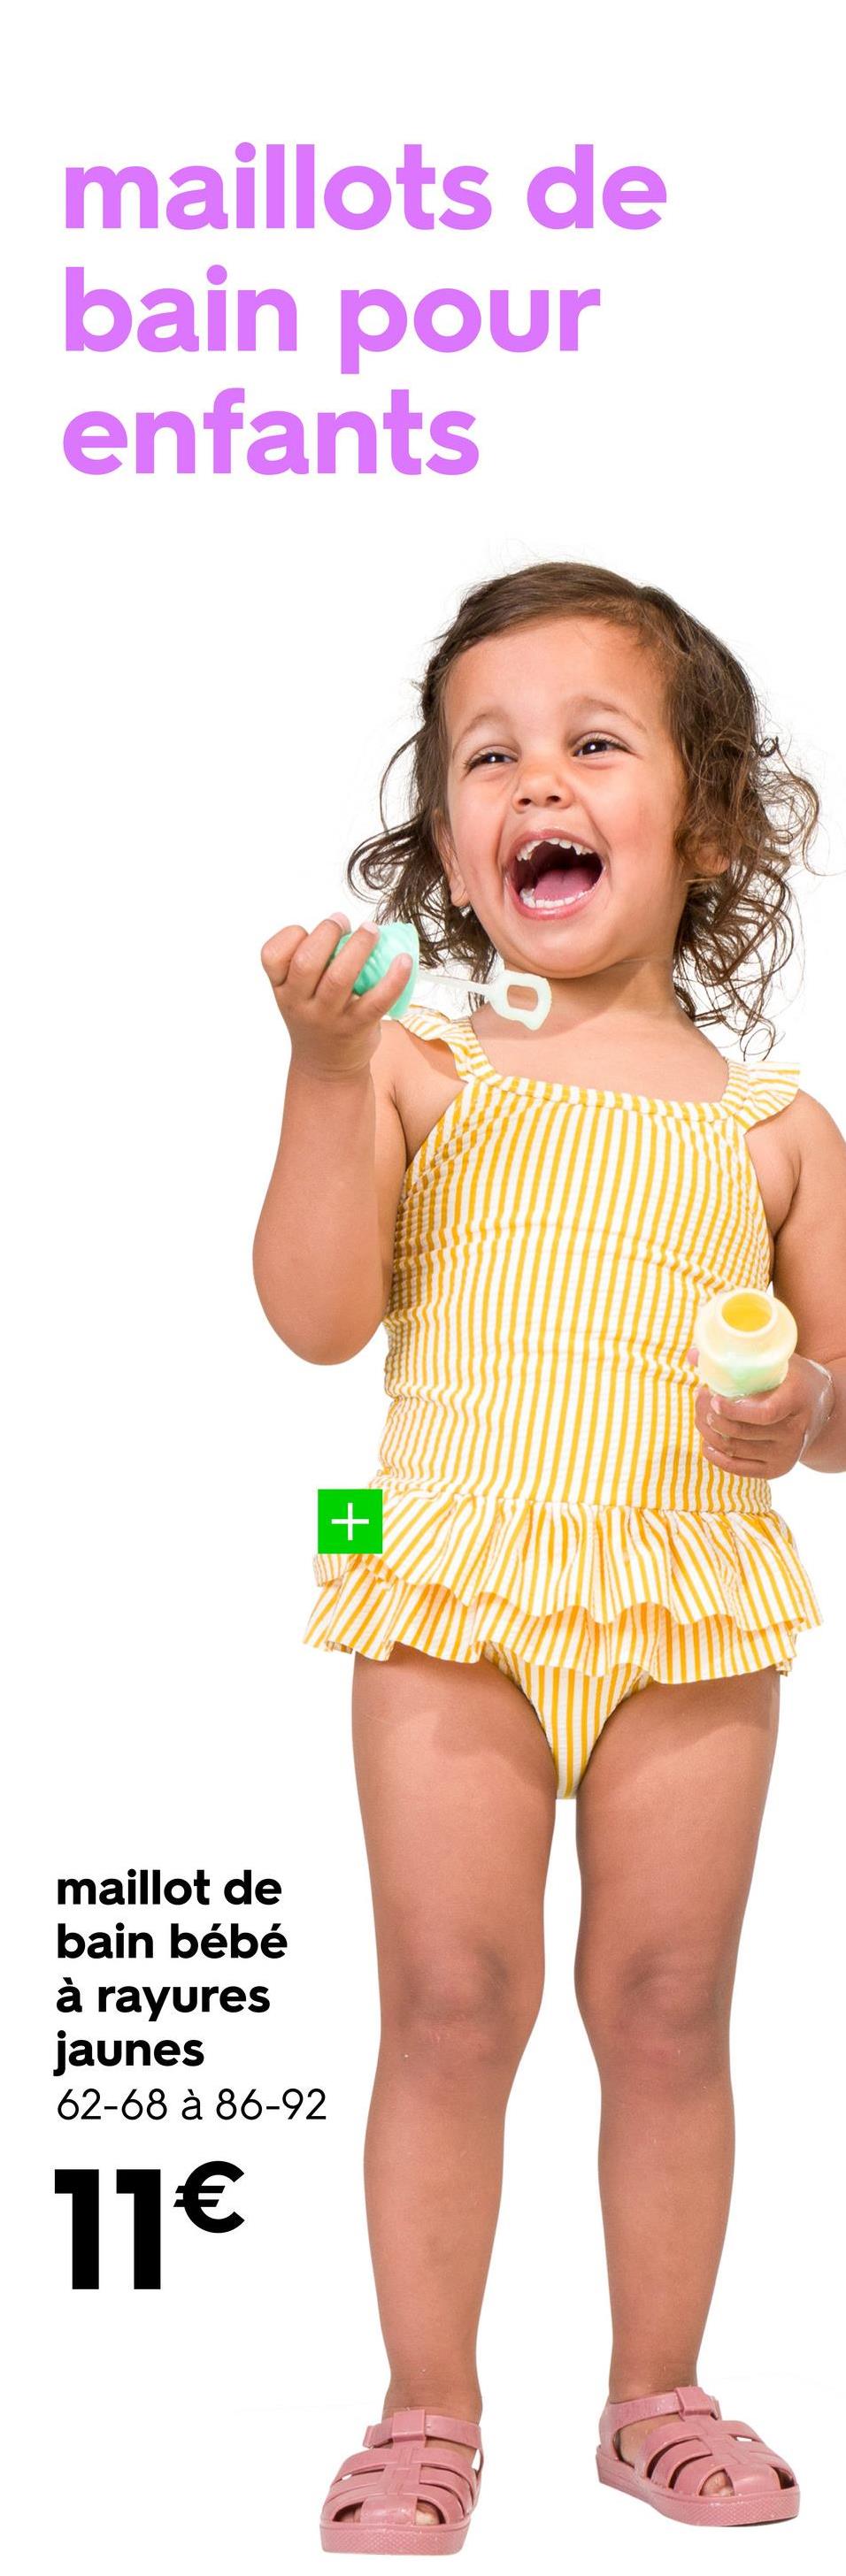 maillots de
bain pour
enfants
+
maillot de
bain bébé
à rayures
jaunes
62-68 à 86-92
11€